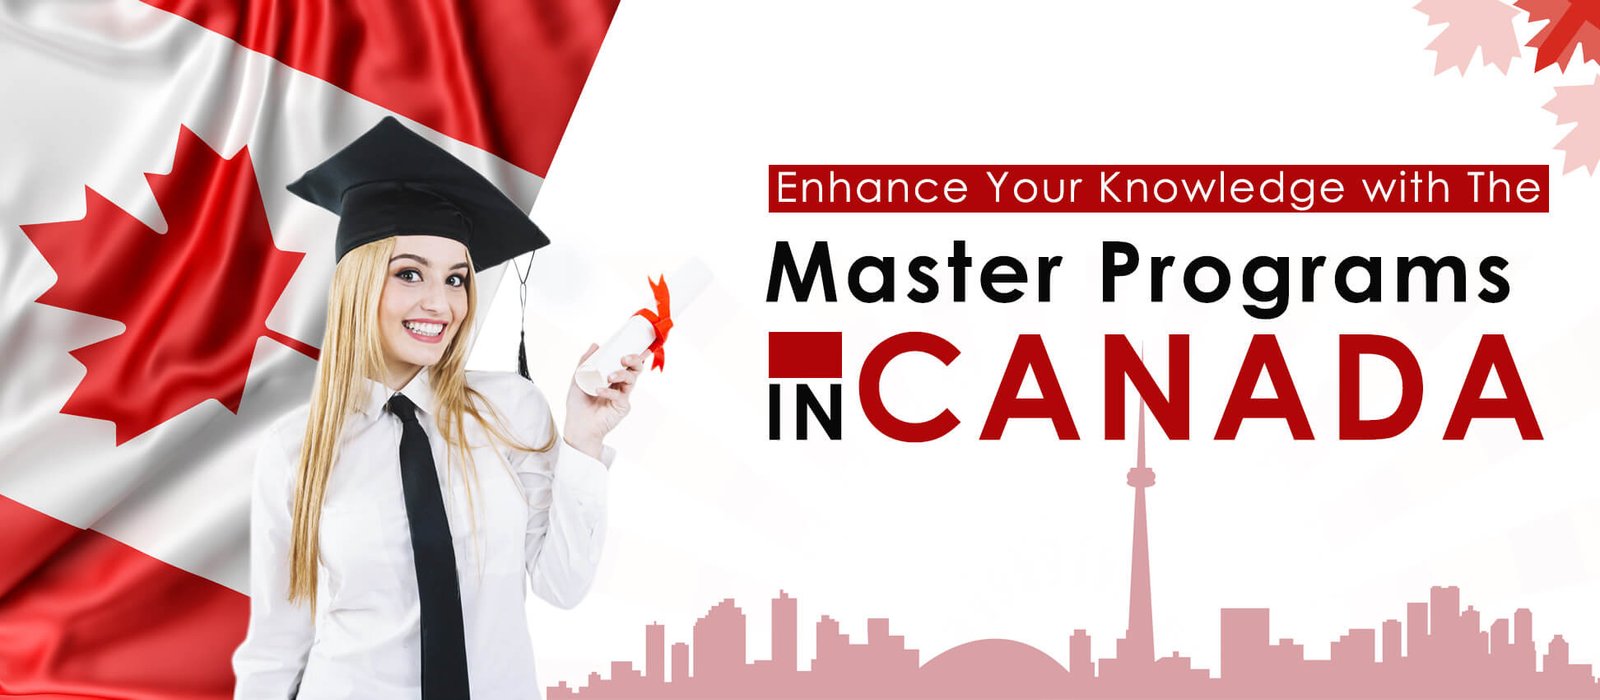 Master Programs in Canada